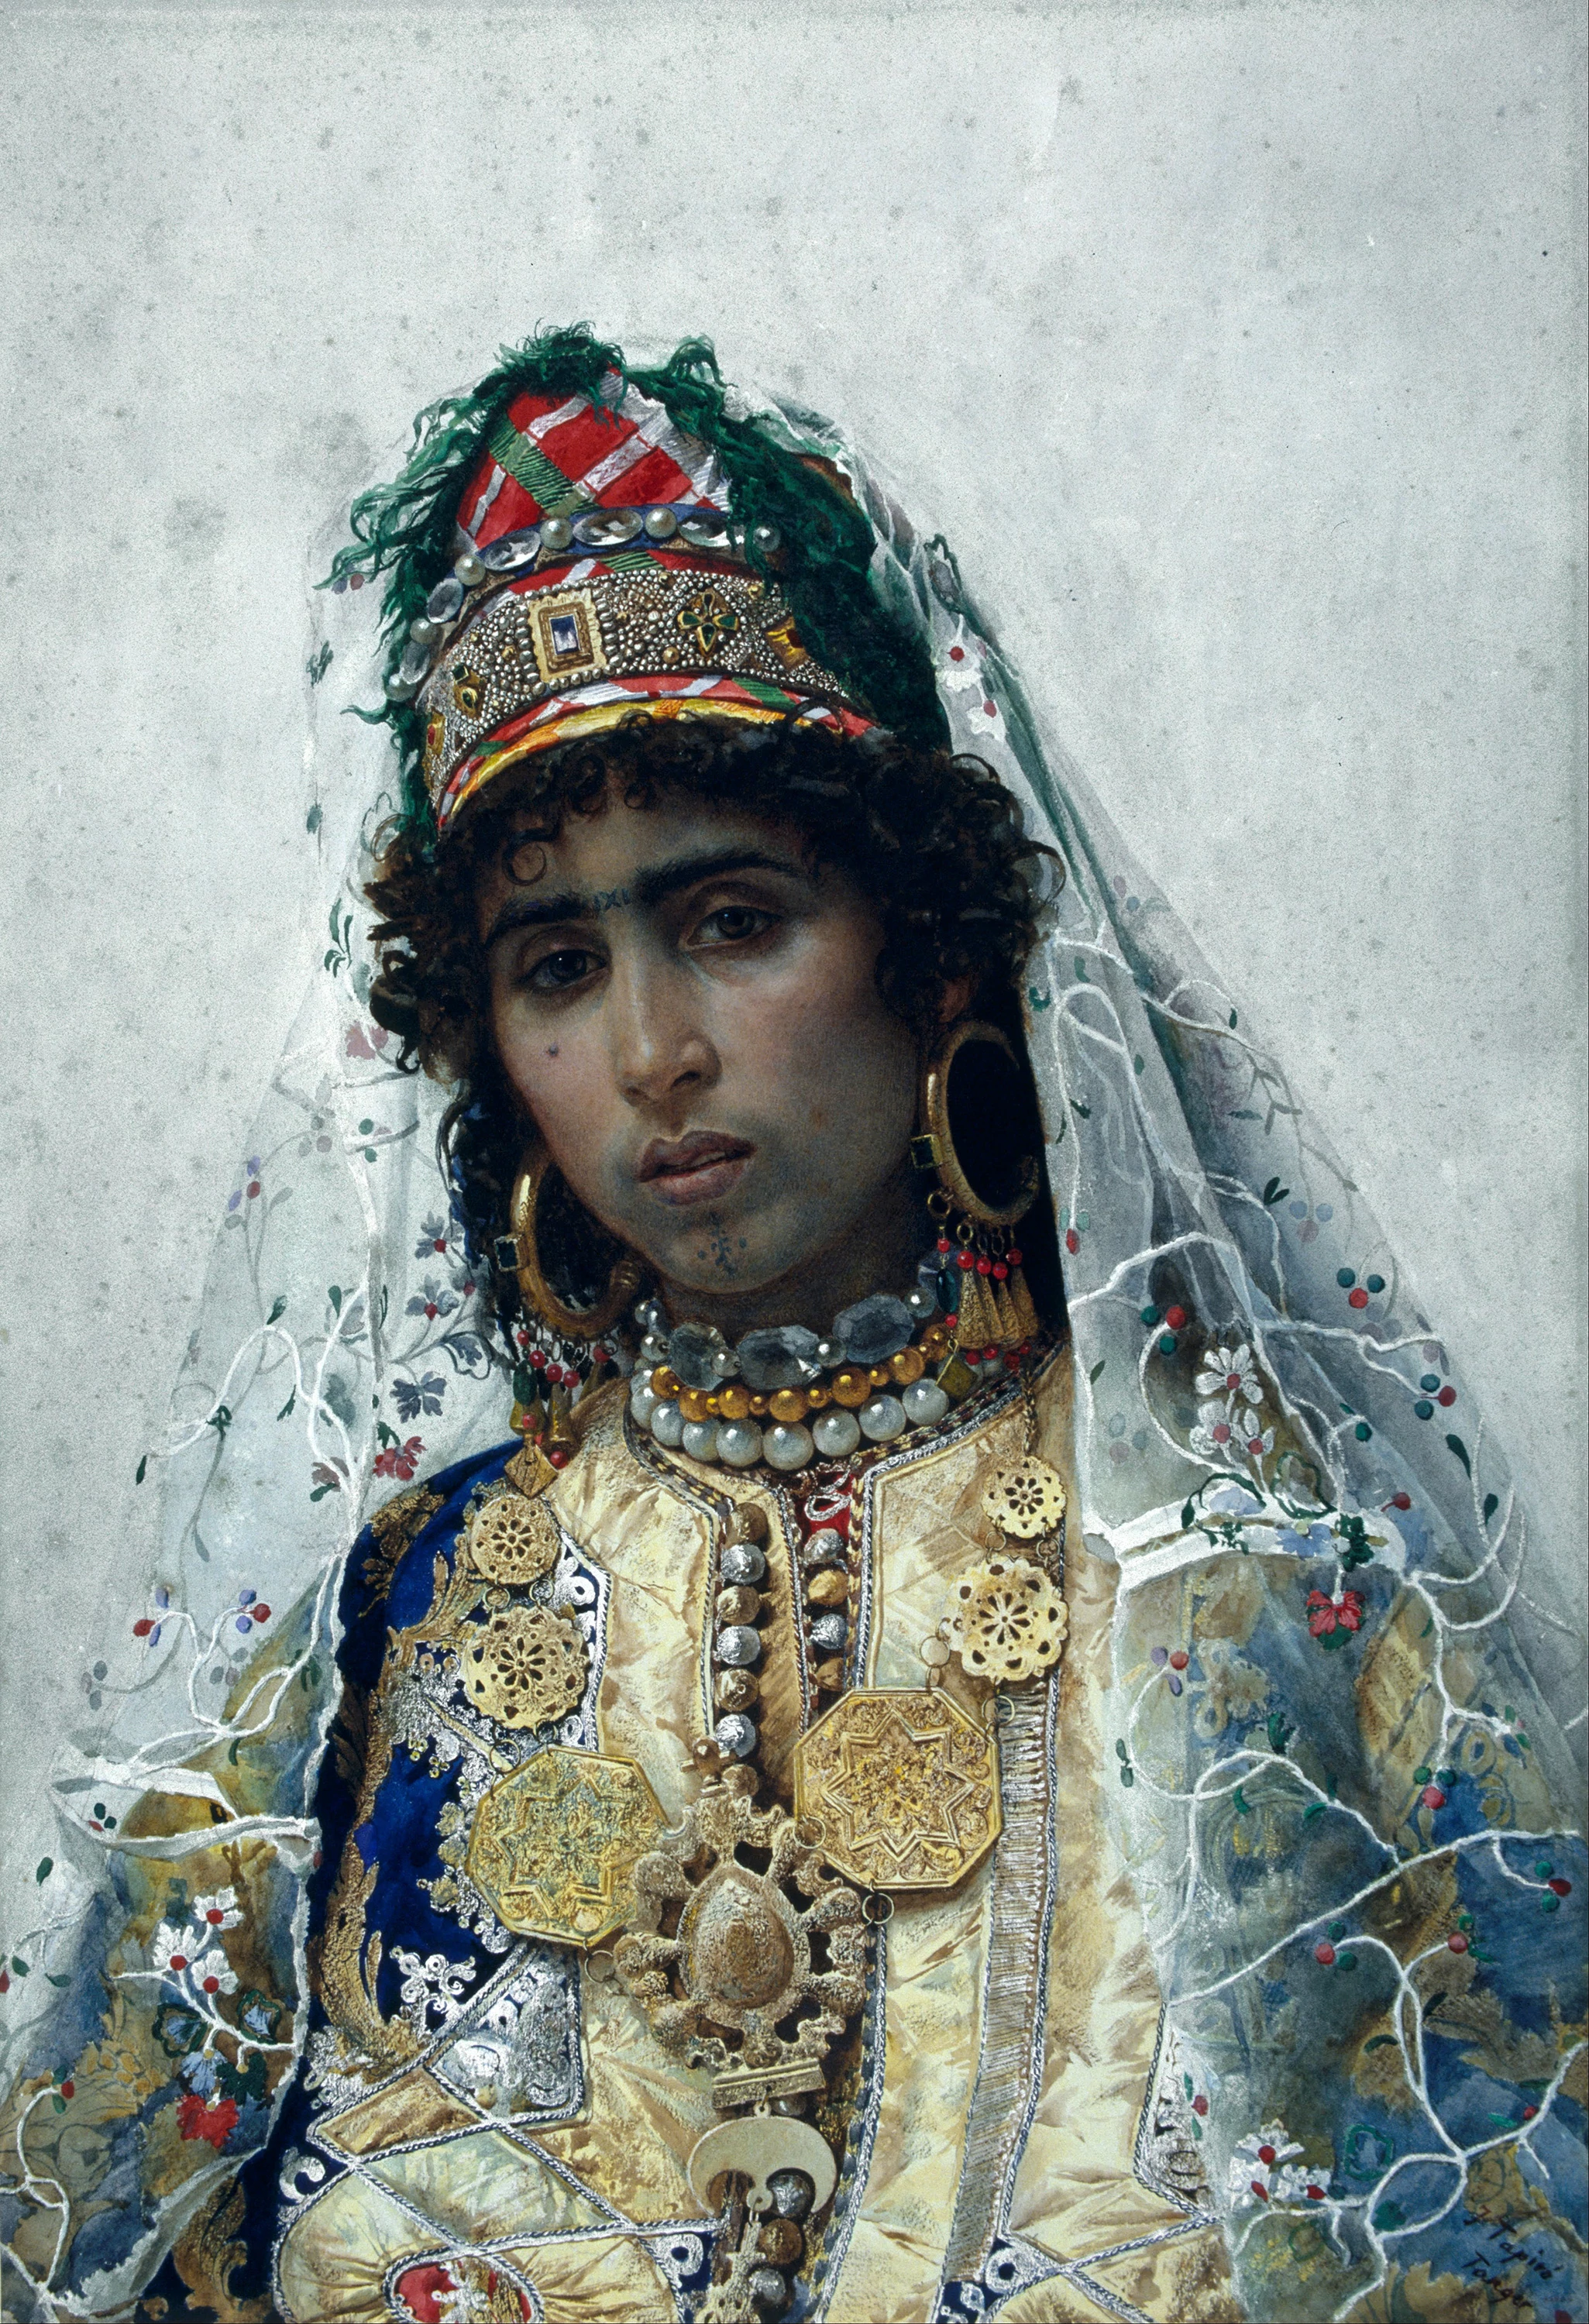 The Berber Bride, José Tapiro y Baro